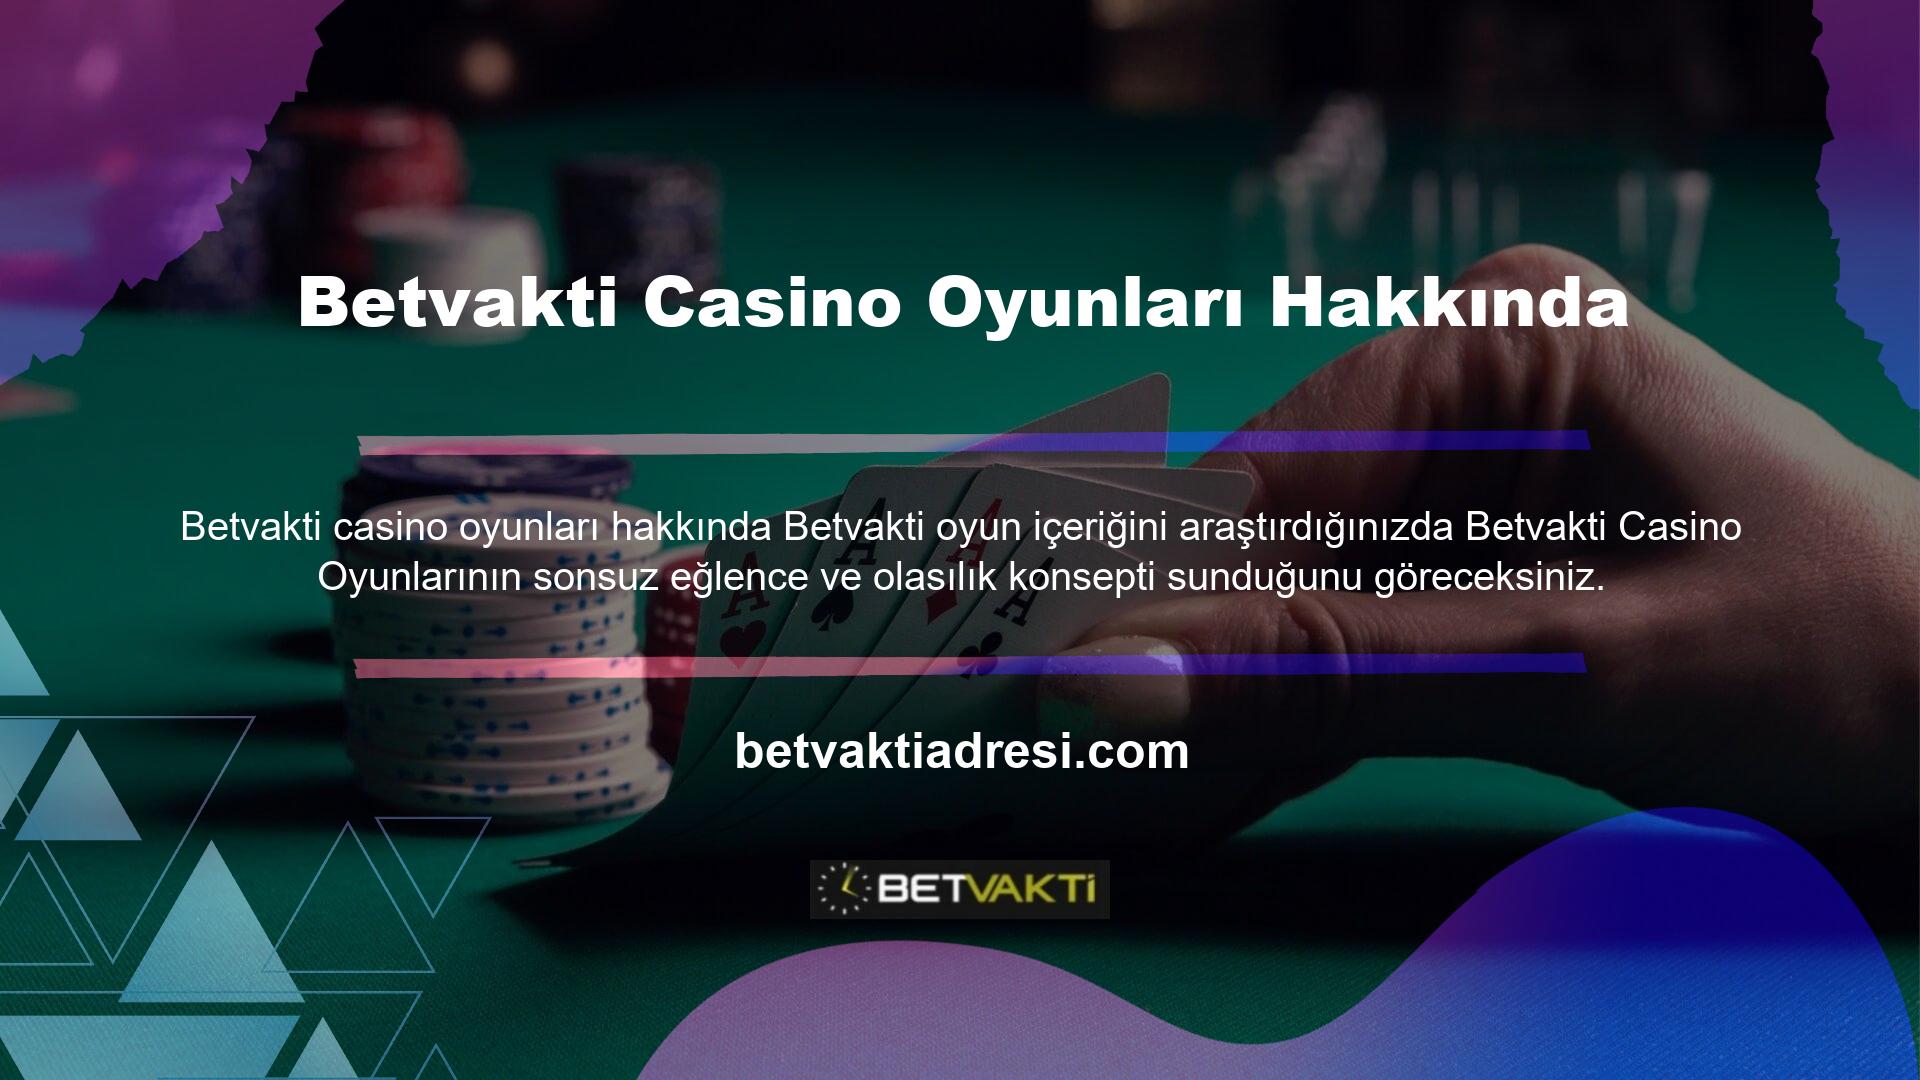 Tüm çevrimiçi casino oyunları mevcuttur